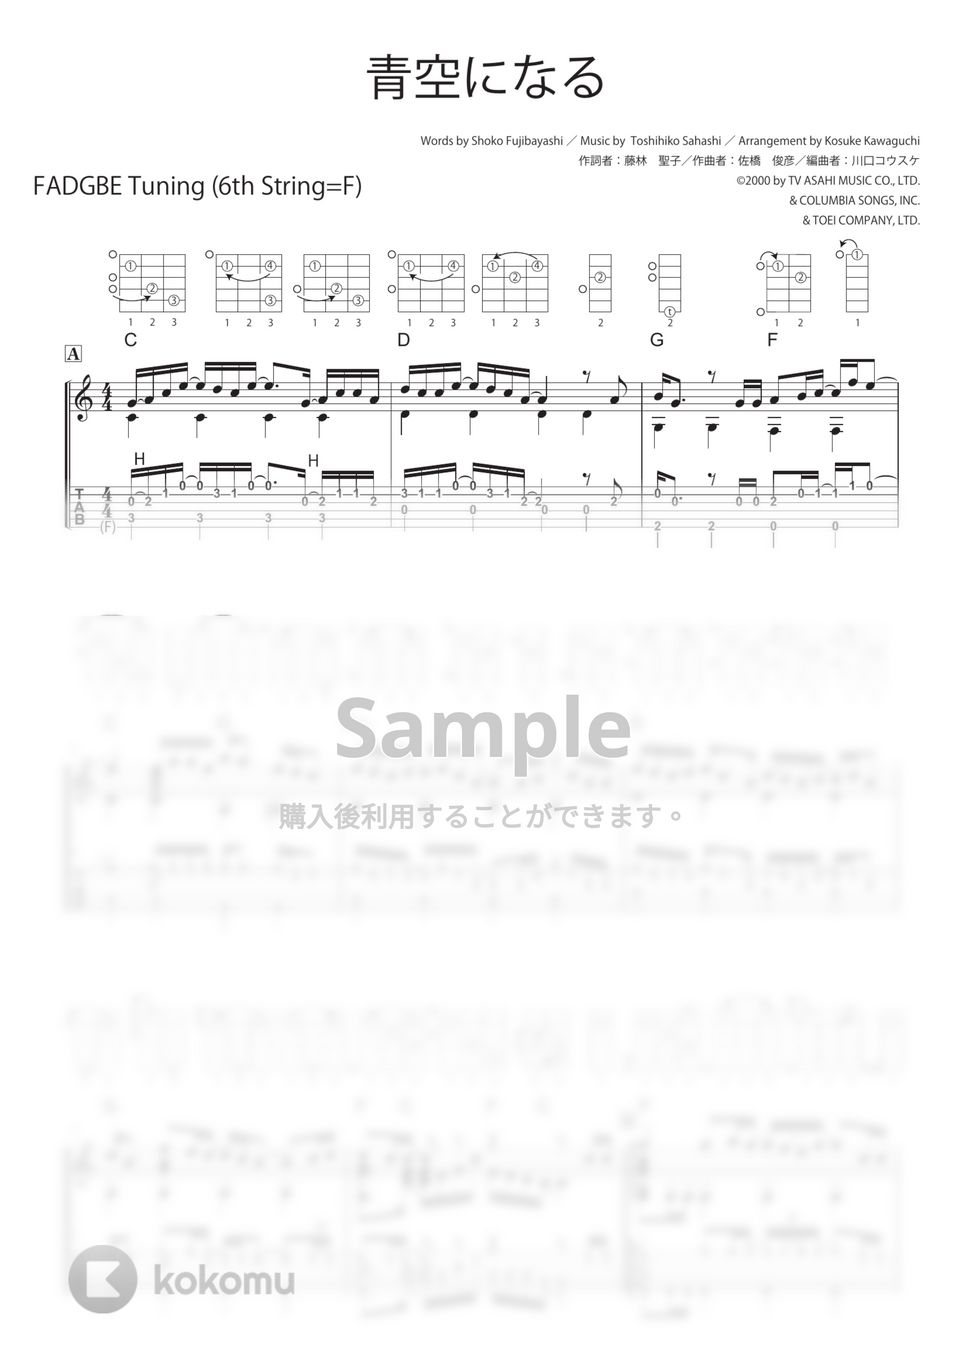 橋本仁 - 青空になる (ソロギター・ダイアグラム、解説付き) by 川口コウスケ